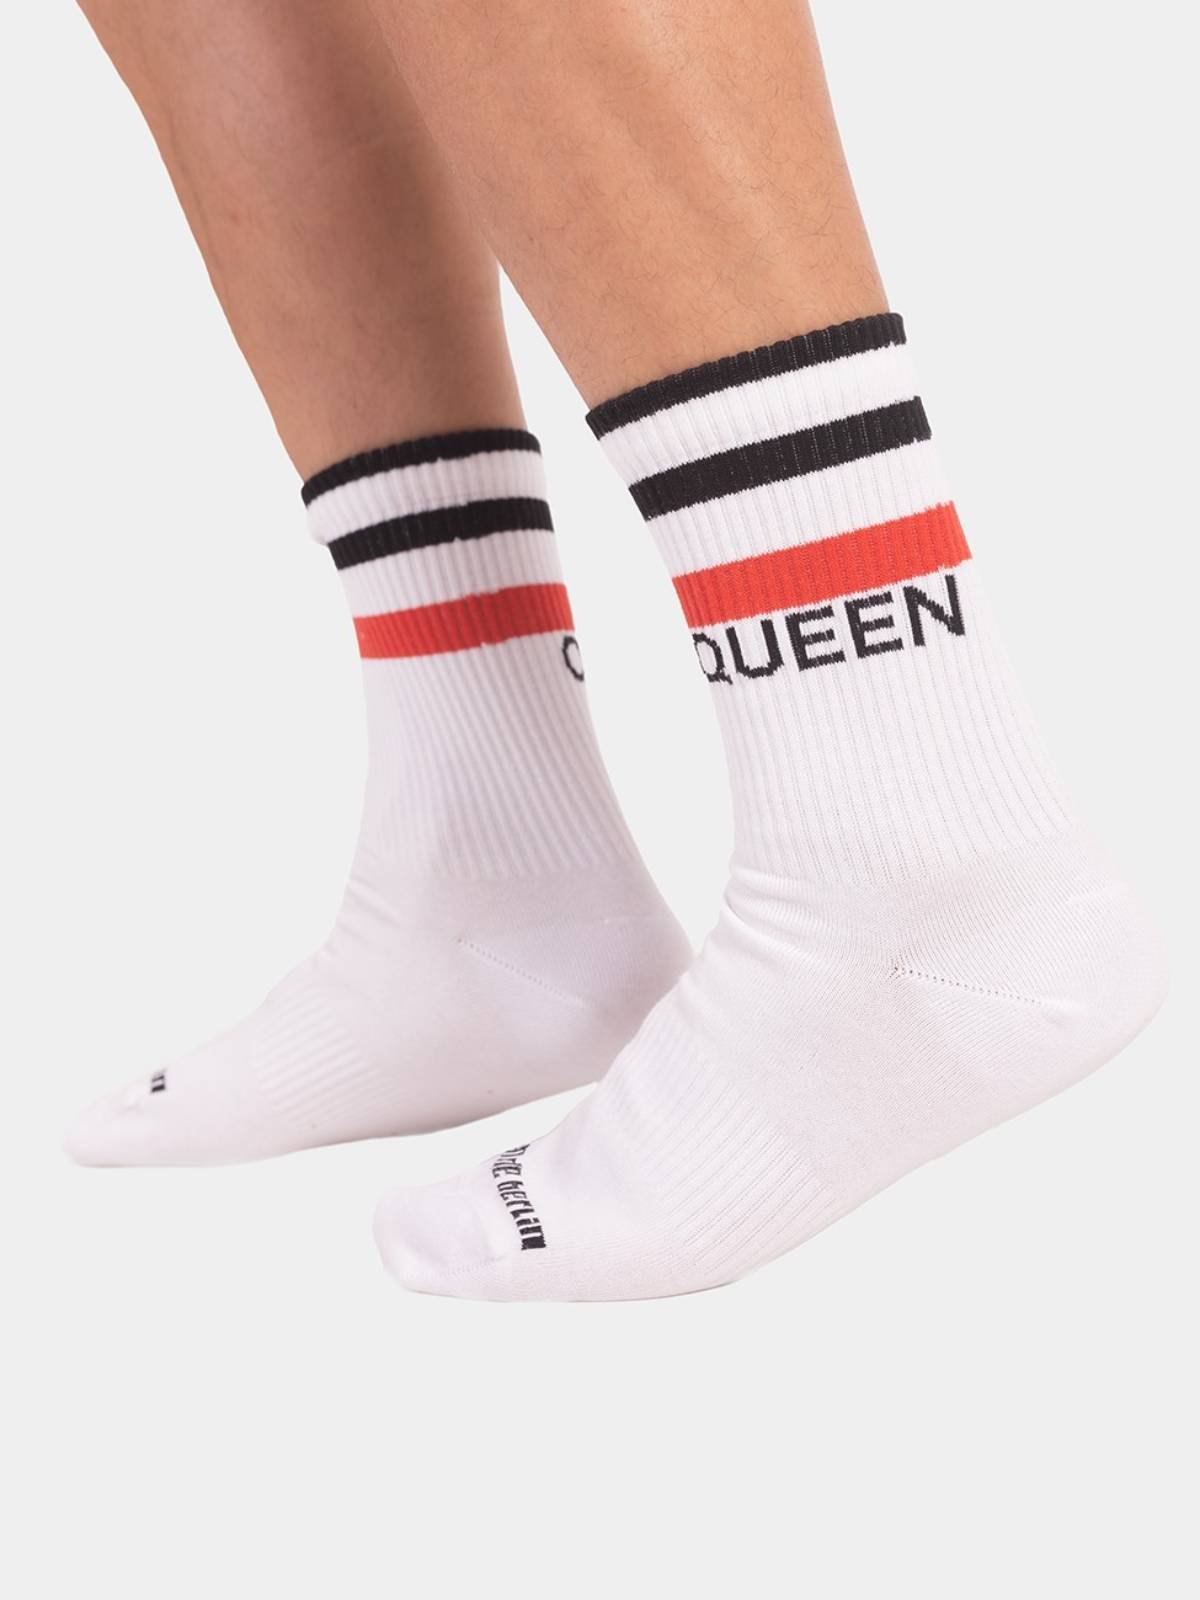 Urban Socks Queen